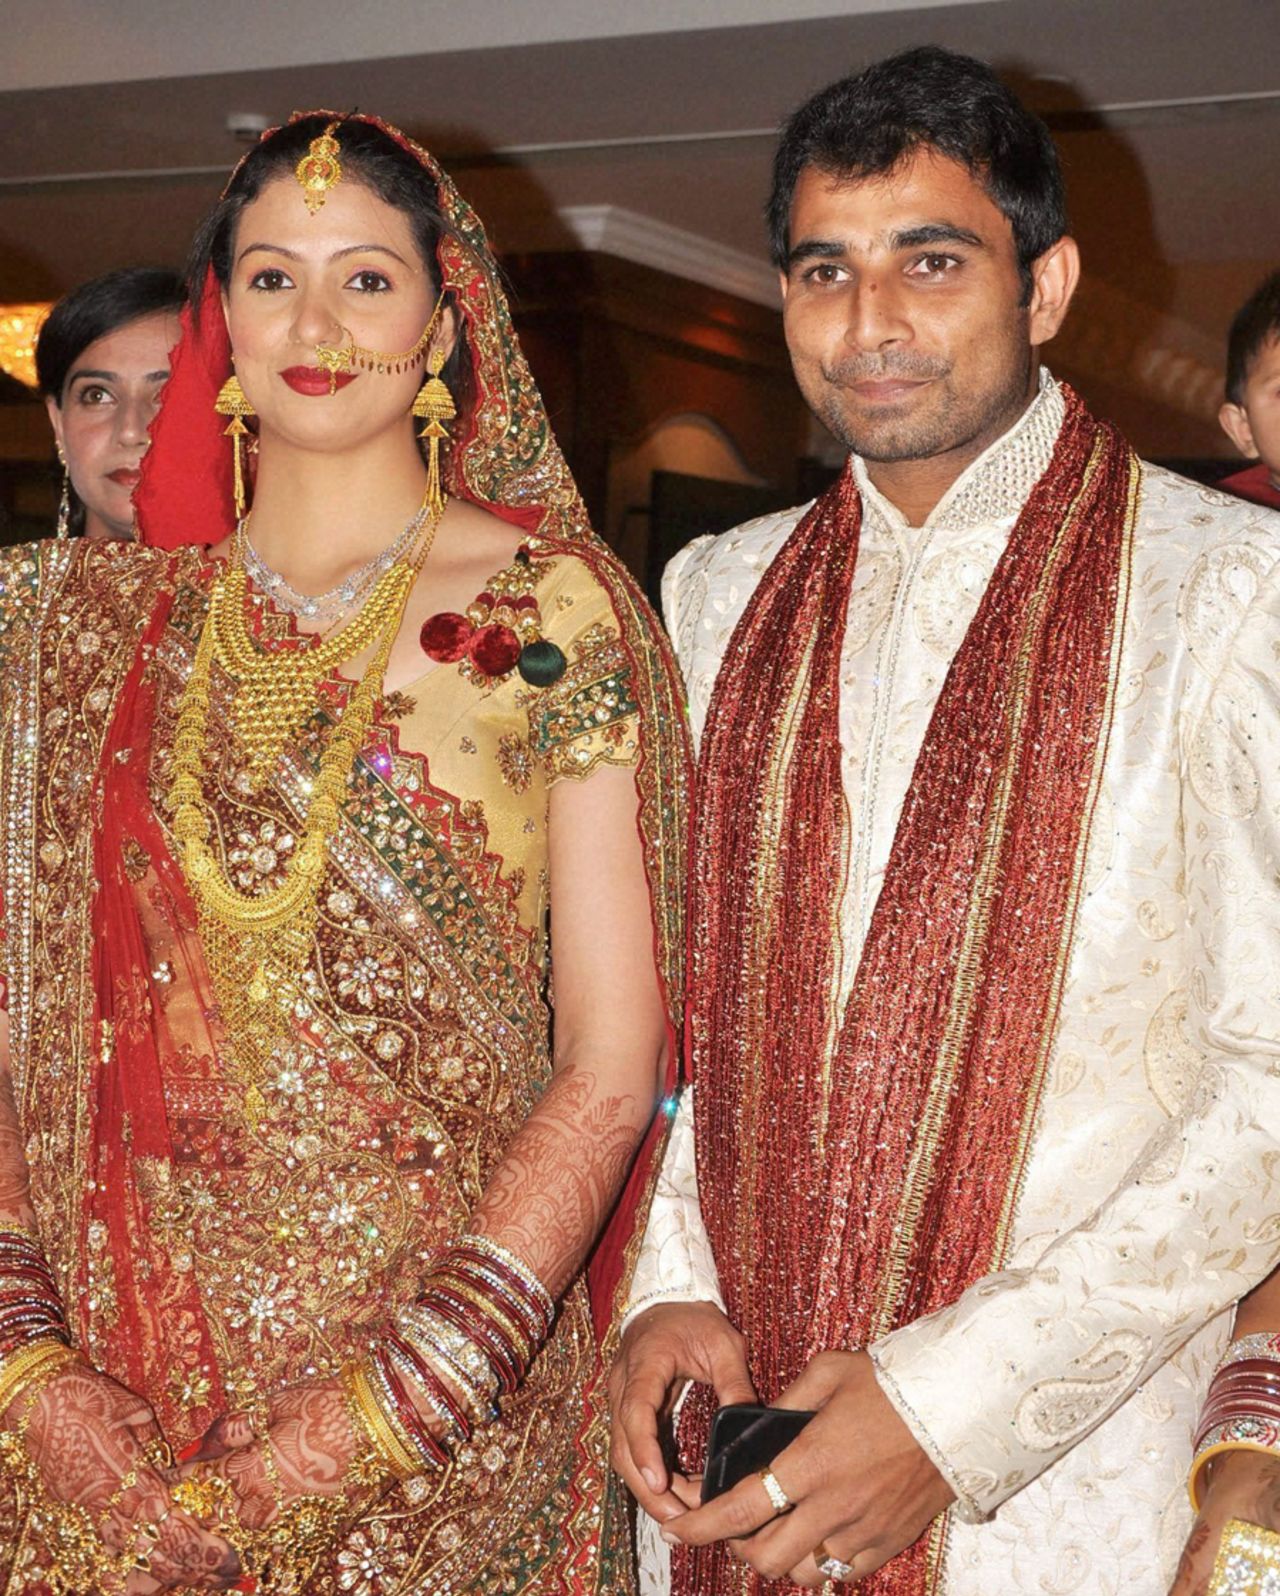 Mohammed Shami with his bride, Hasin Jahan, Moradabad, June 6, 2014